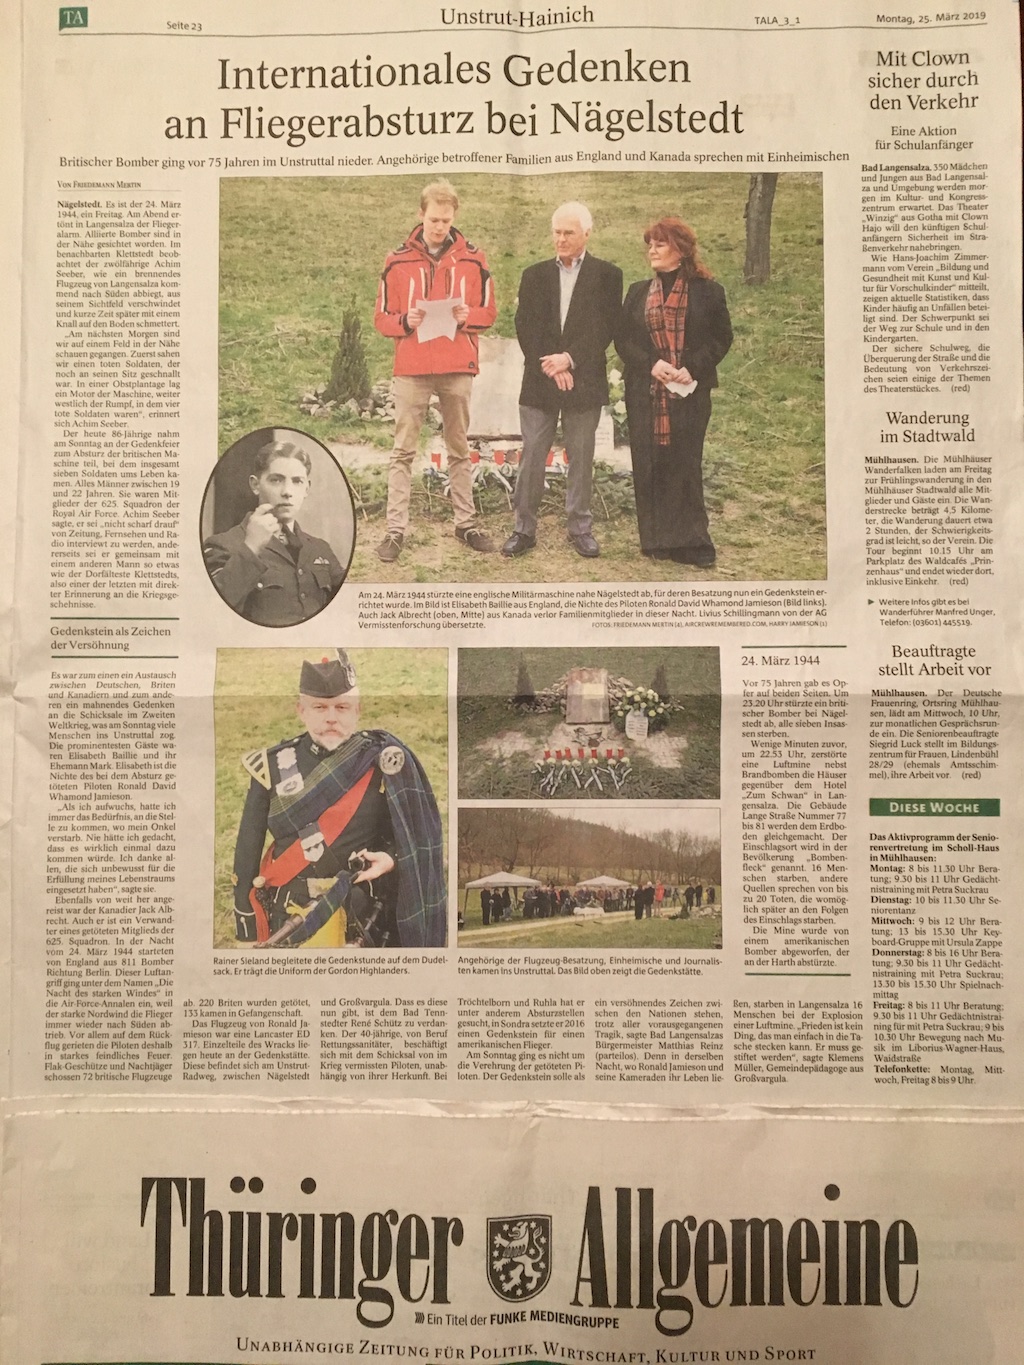 8. Newspaper - Thüringer Allgemeine.